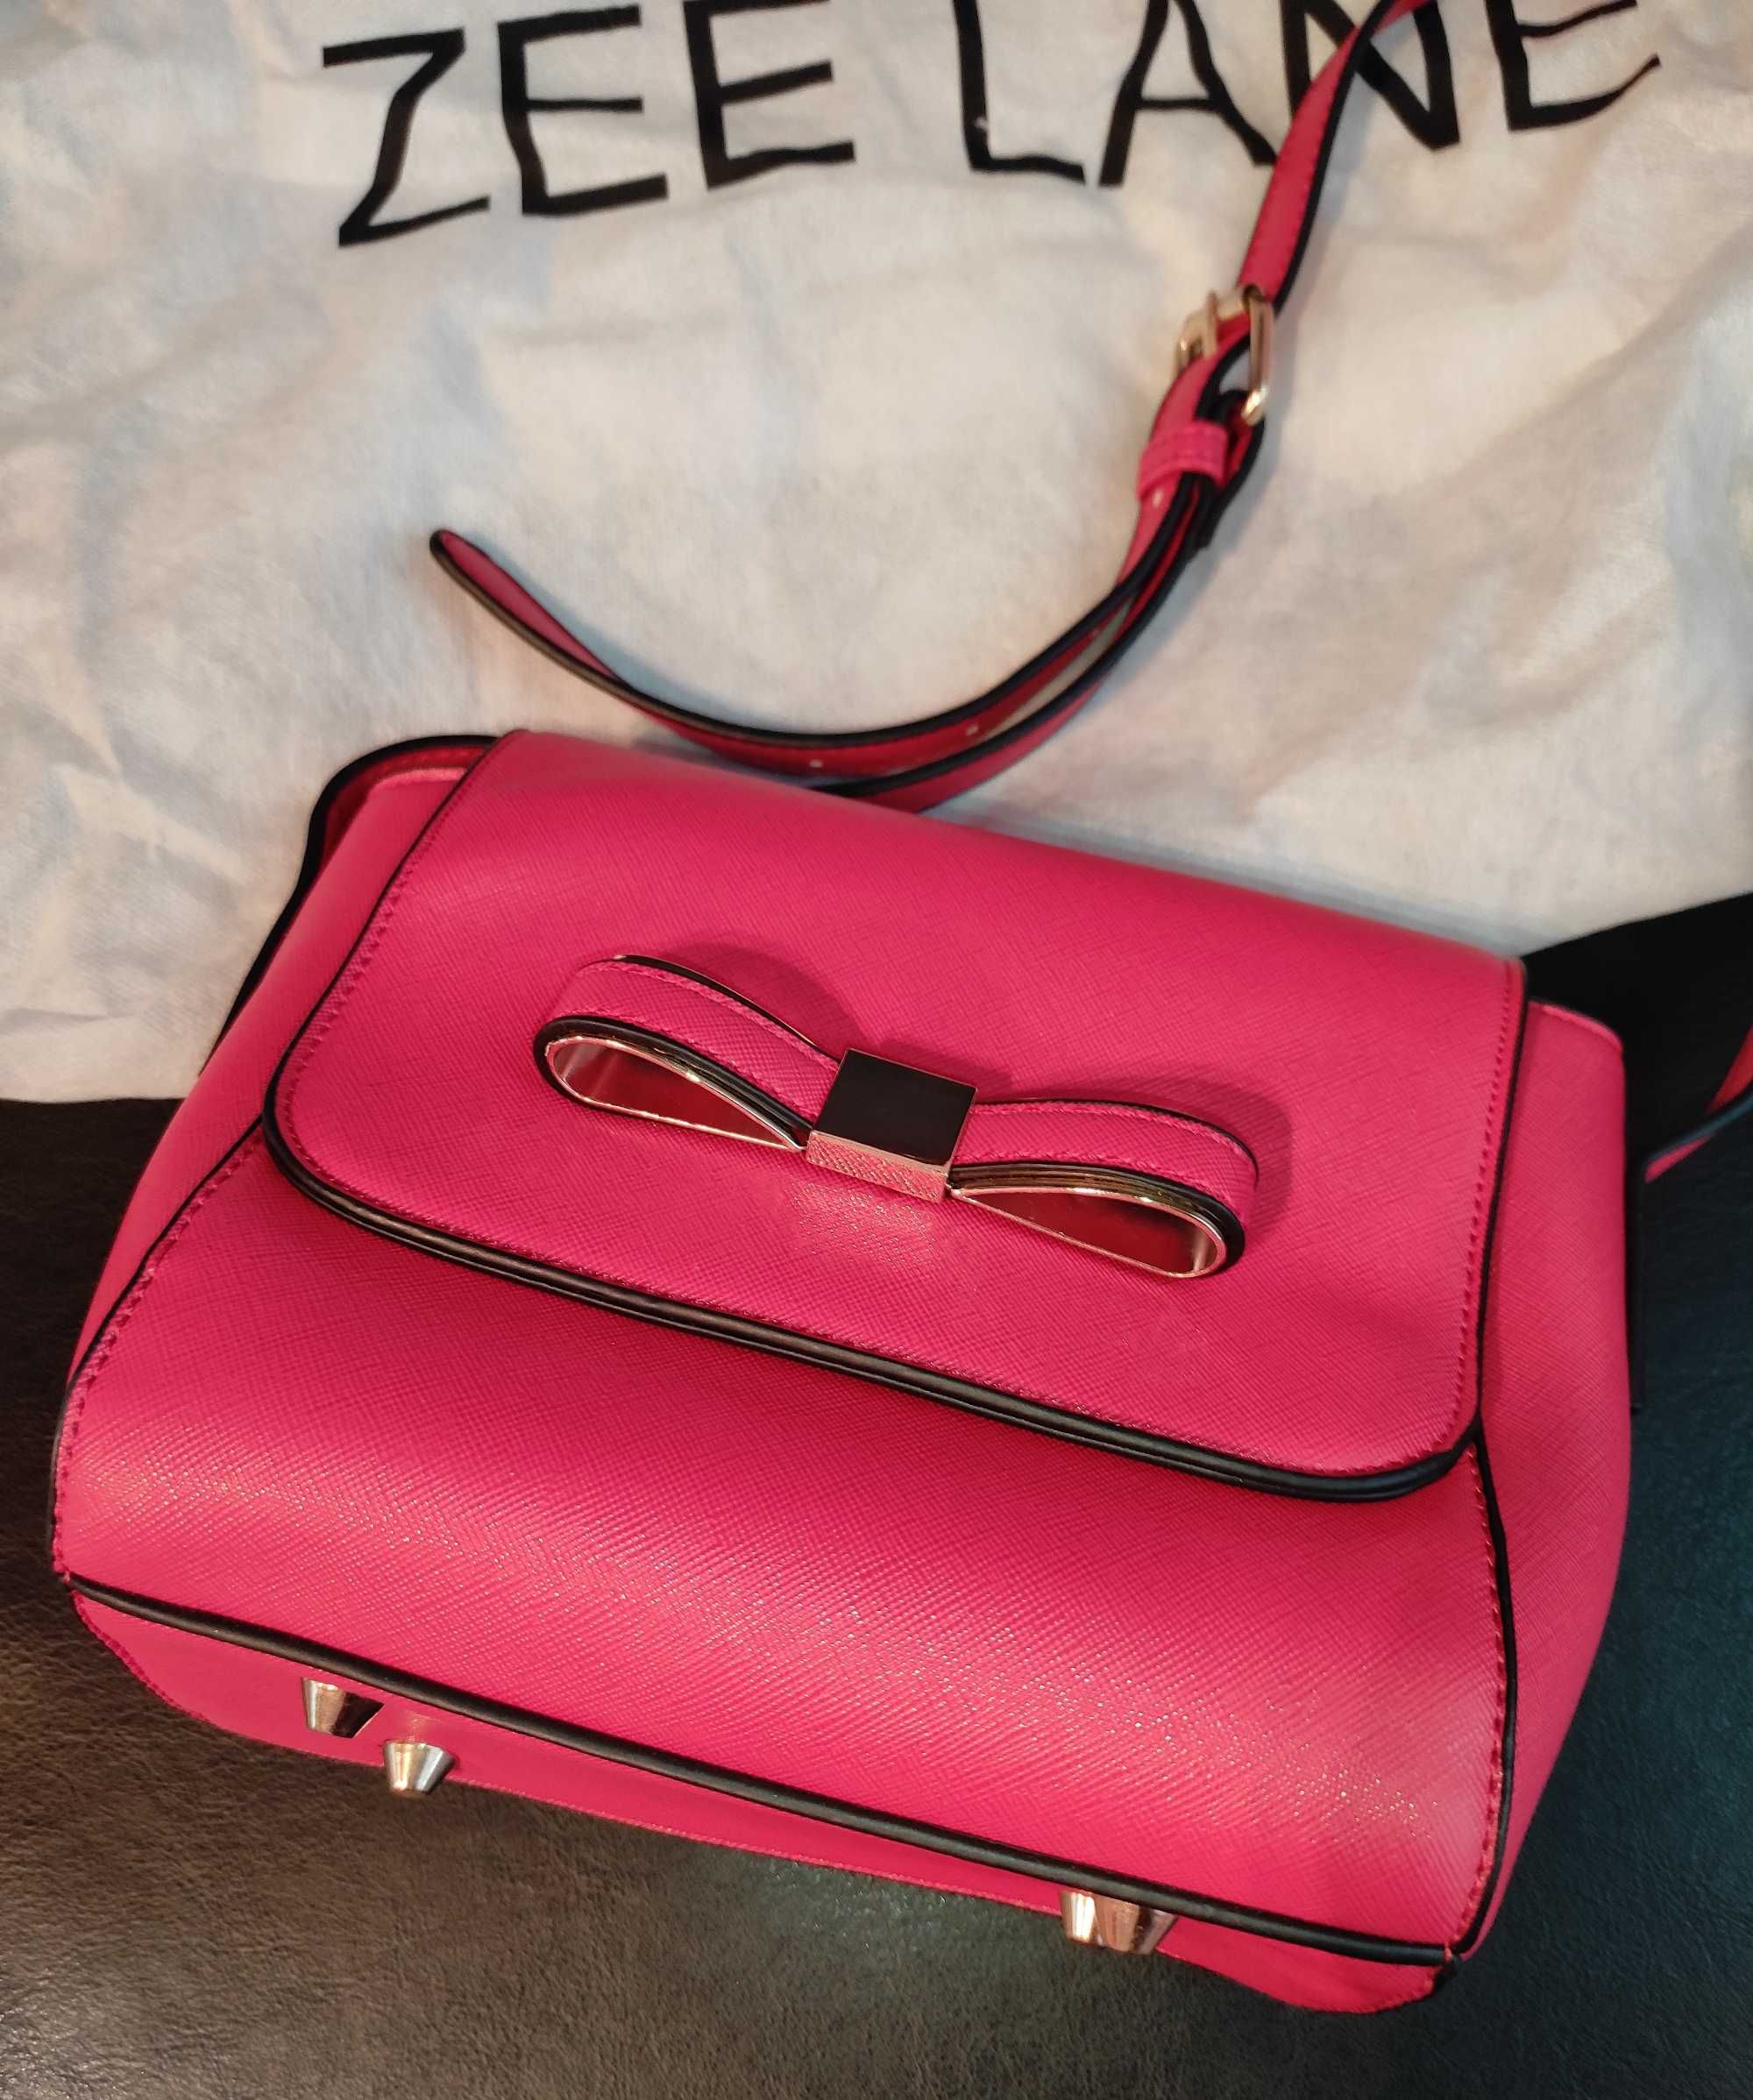 Дамски чантa Zee Lane